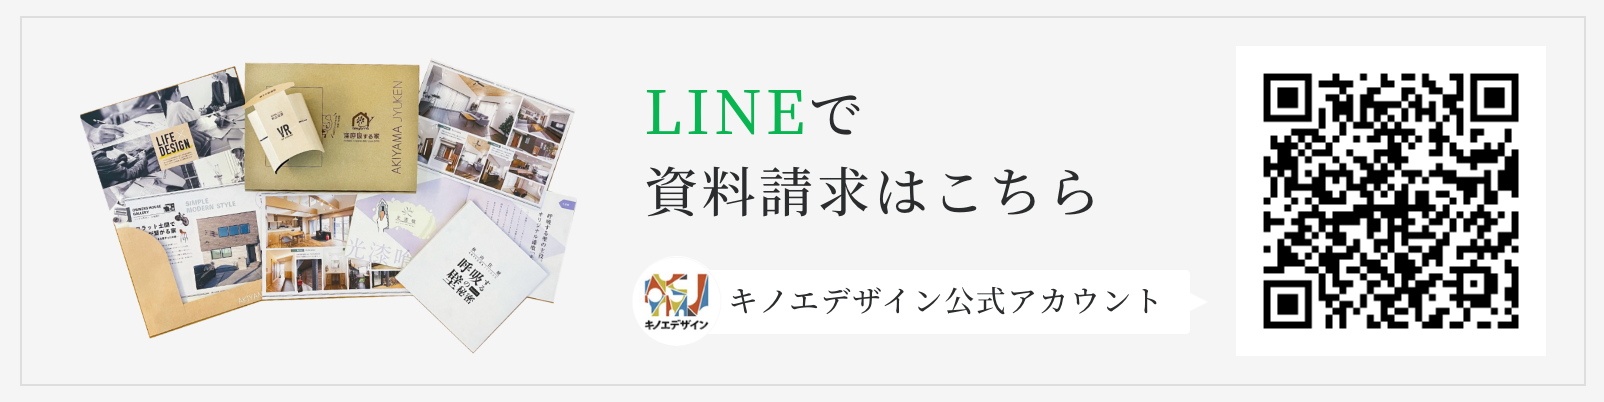 キノエデザイン公式LINE